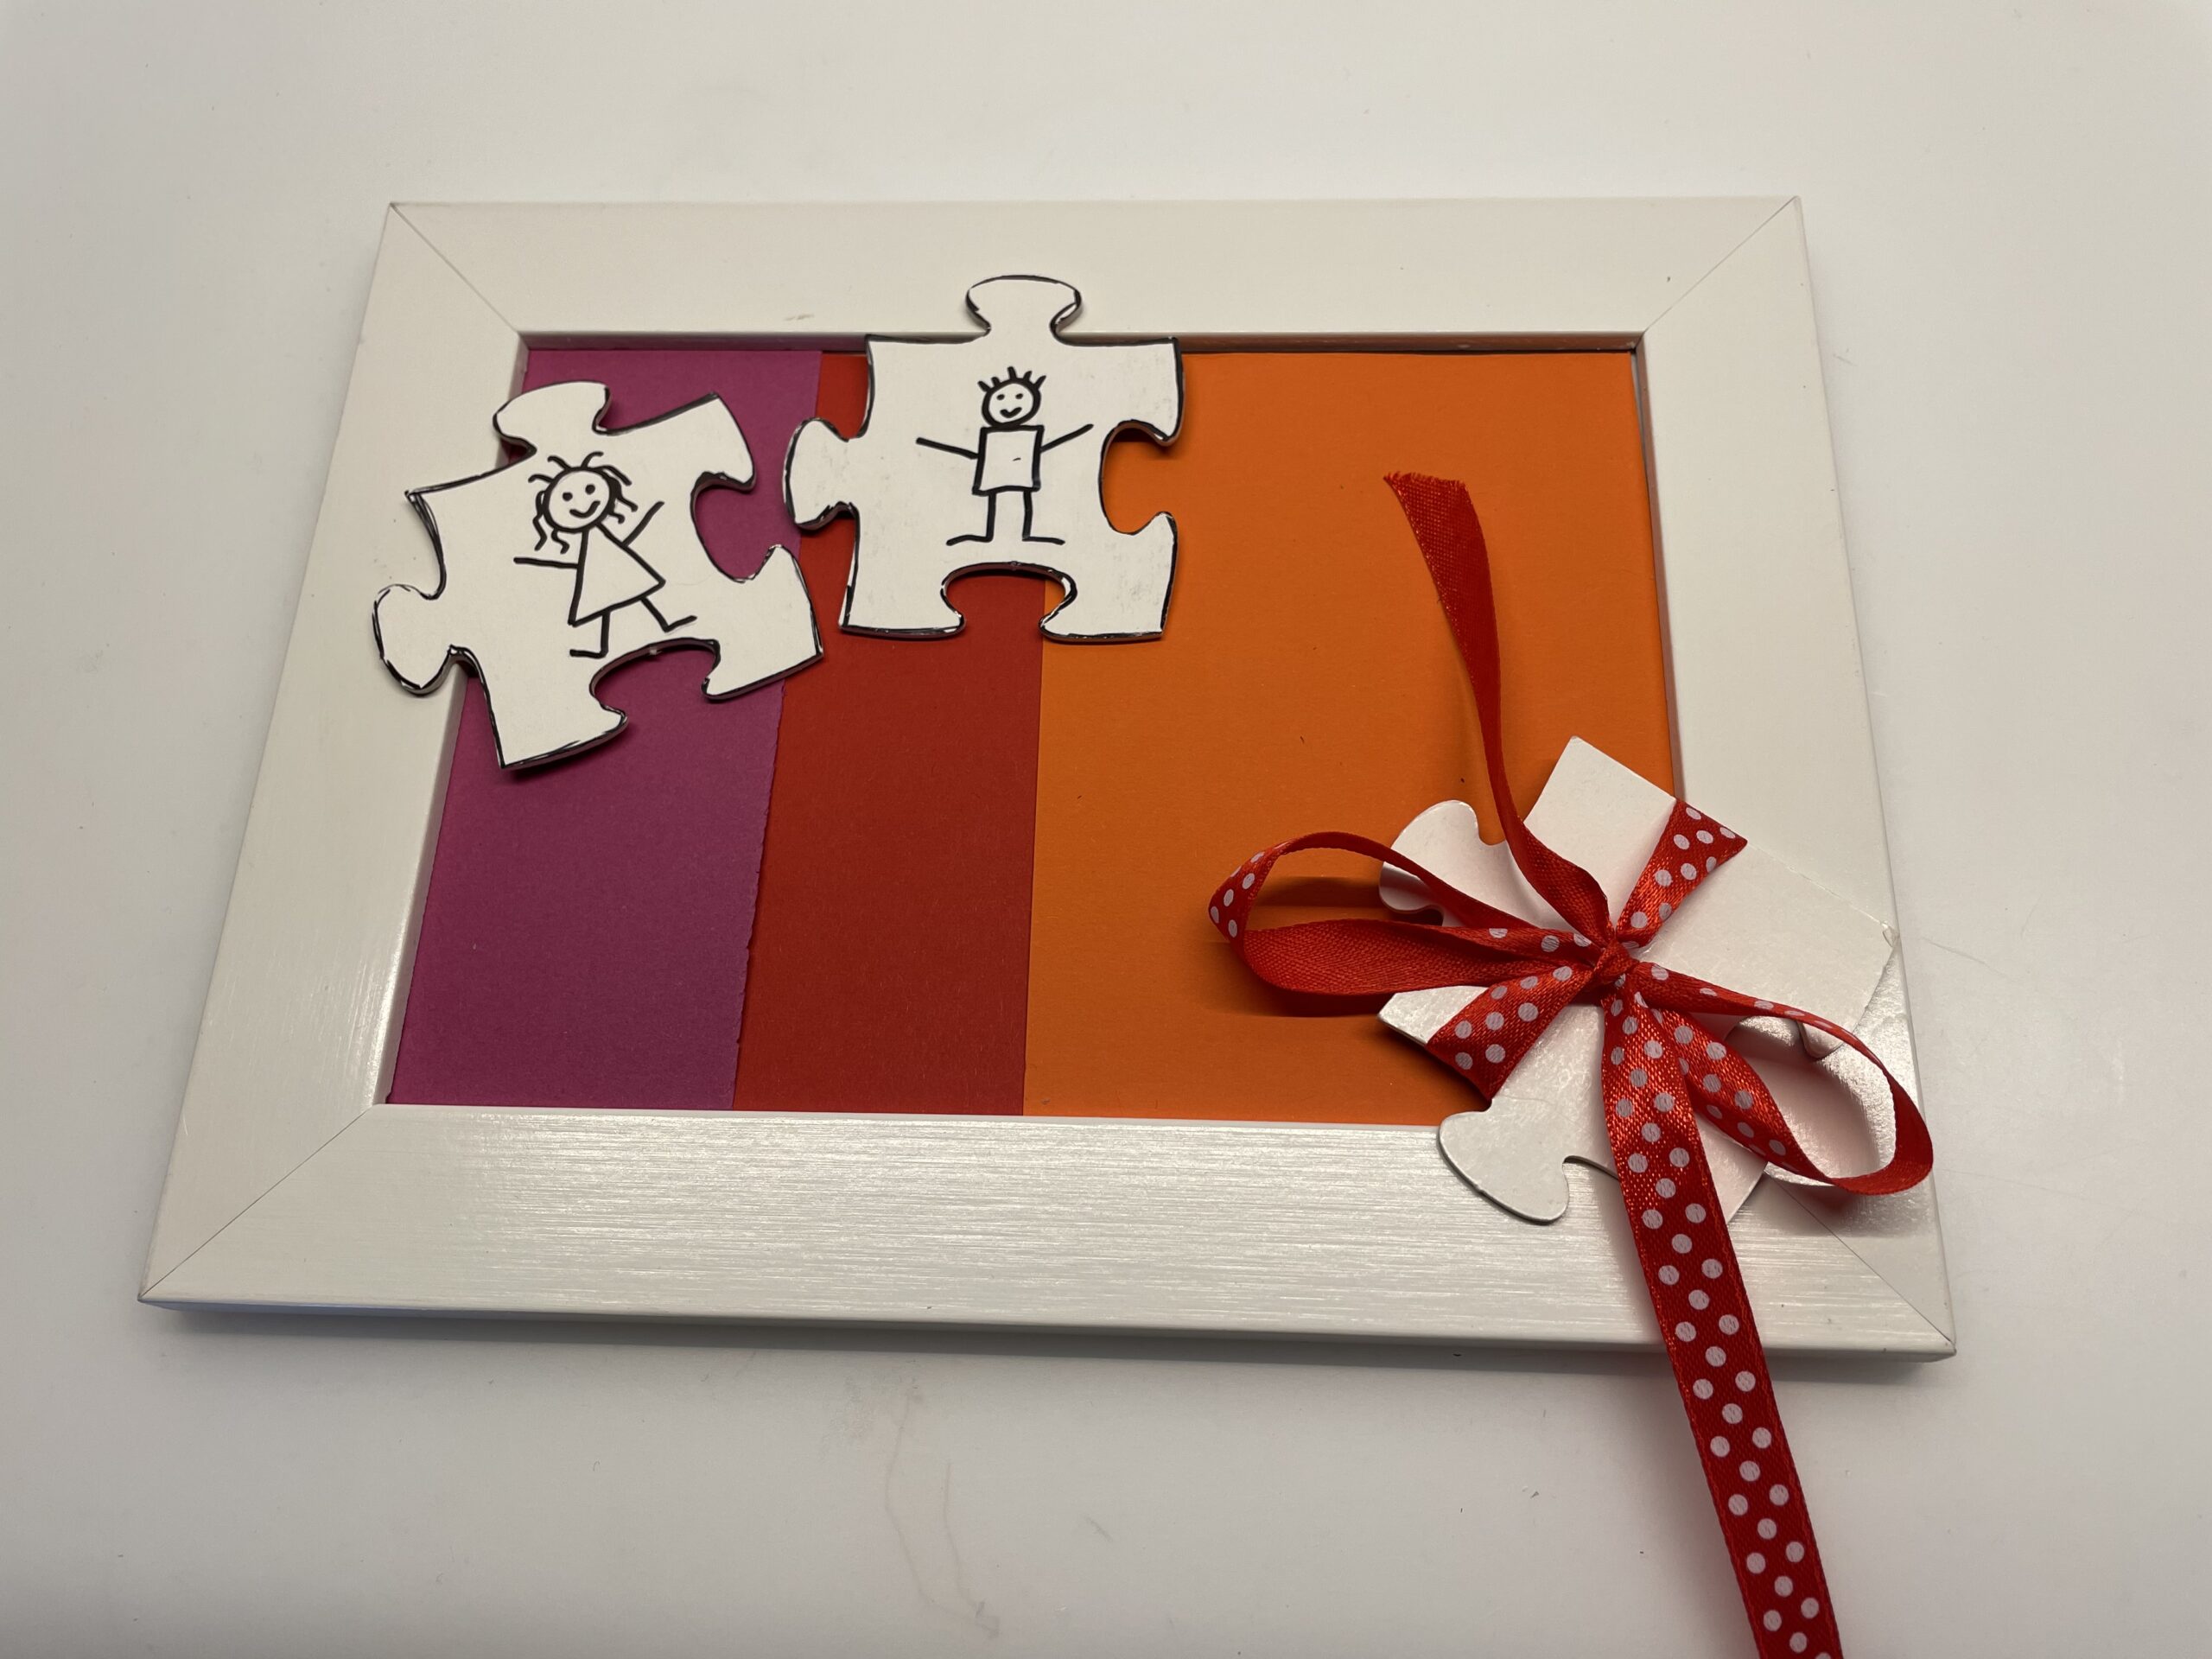 Bild zum Schritt 16 für das Bastel- und DIY-Abenteuer für Kinder: 'Ihr könnt auch ein drittes Puzzle-Teil als Geschenk verpacken und...'